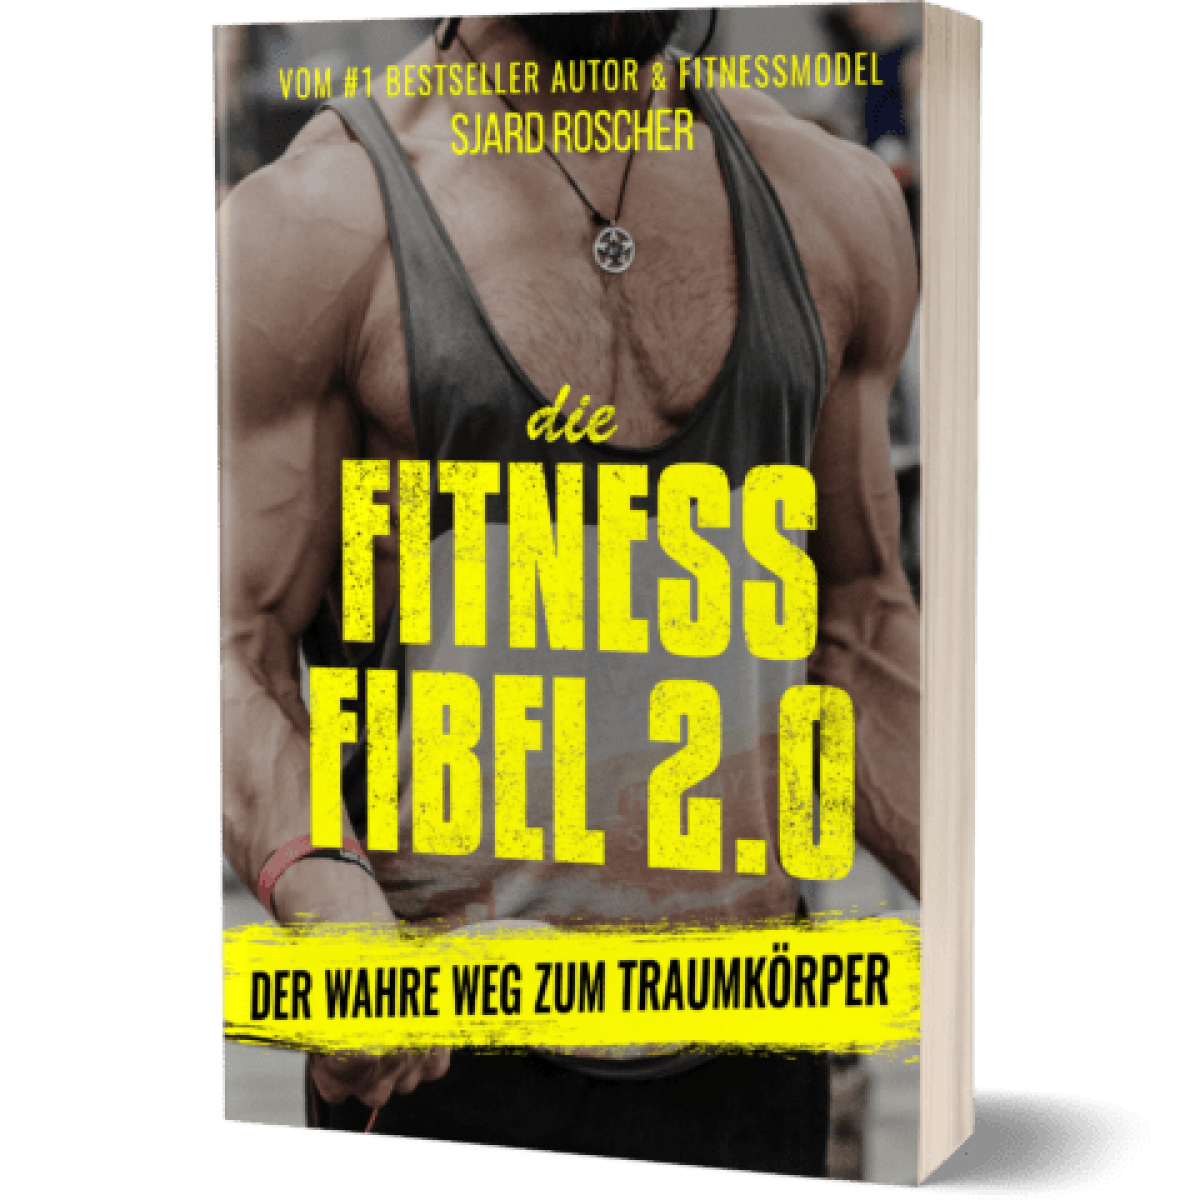 Die Fitness Fibel 2 0 Buch Erfahrungen Sjard Roscher